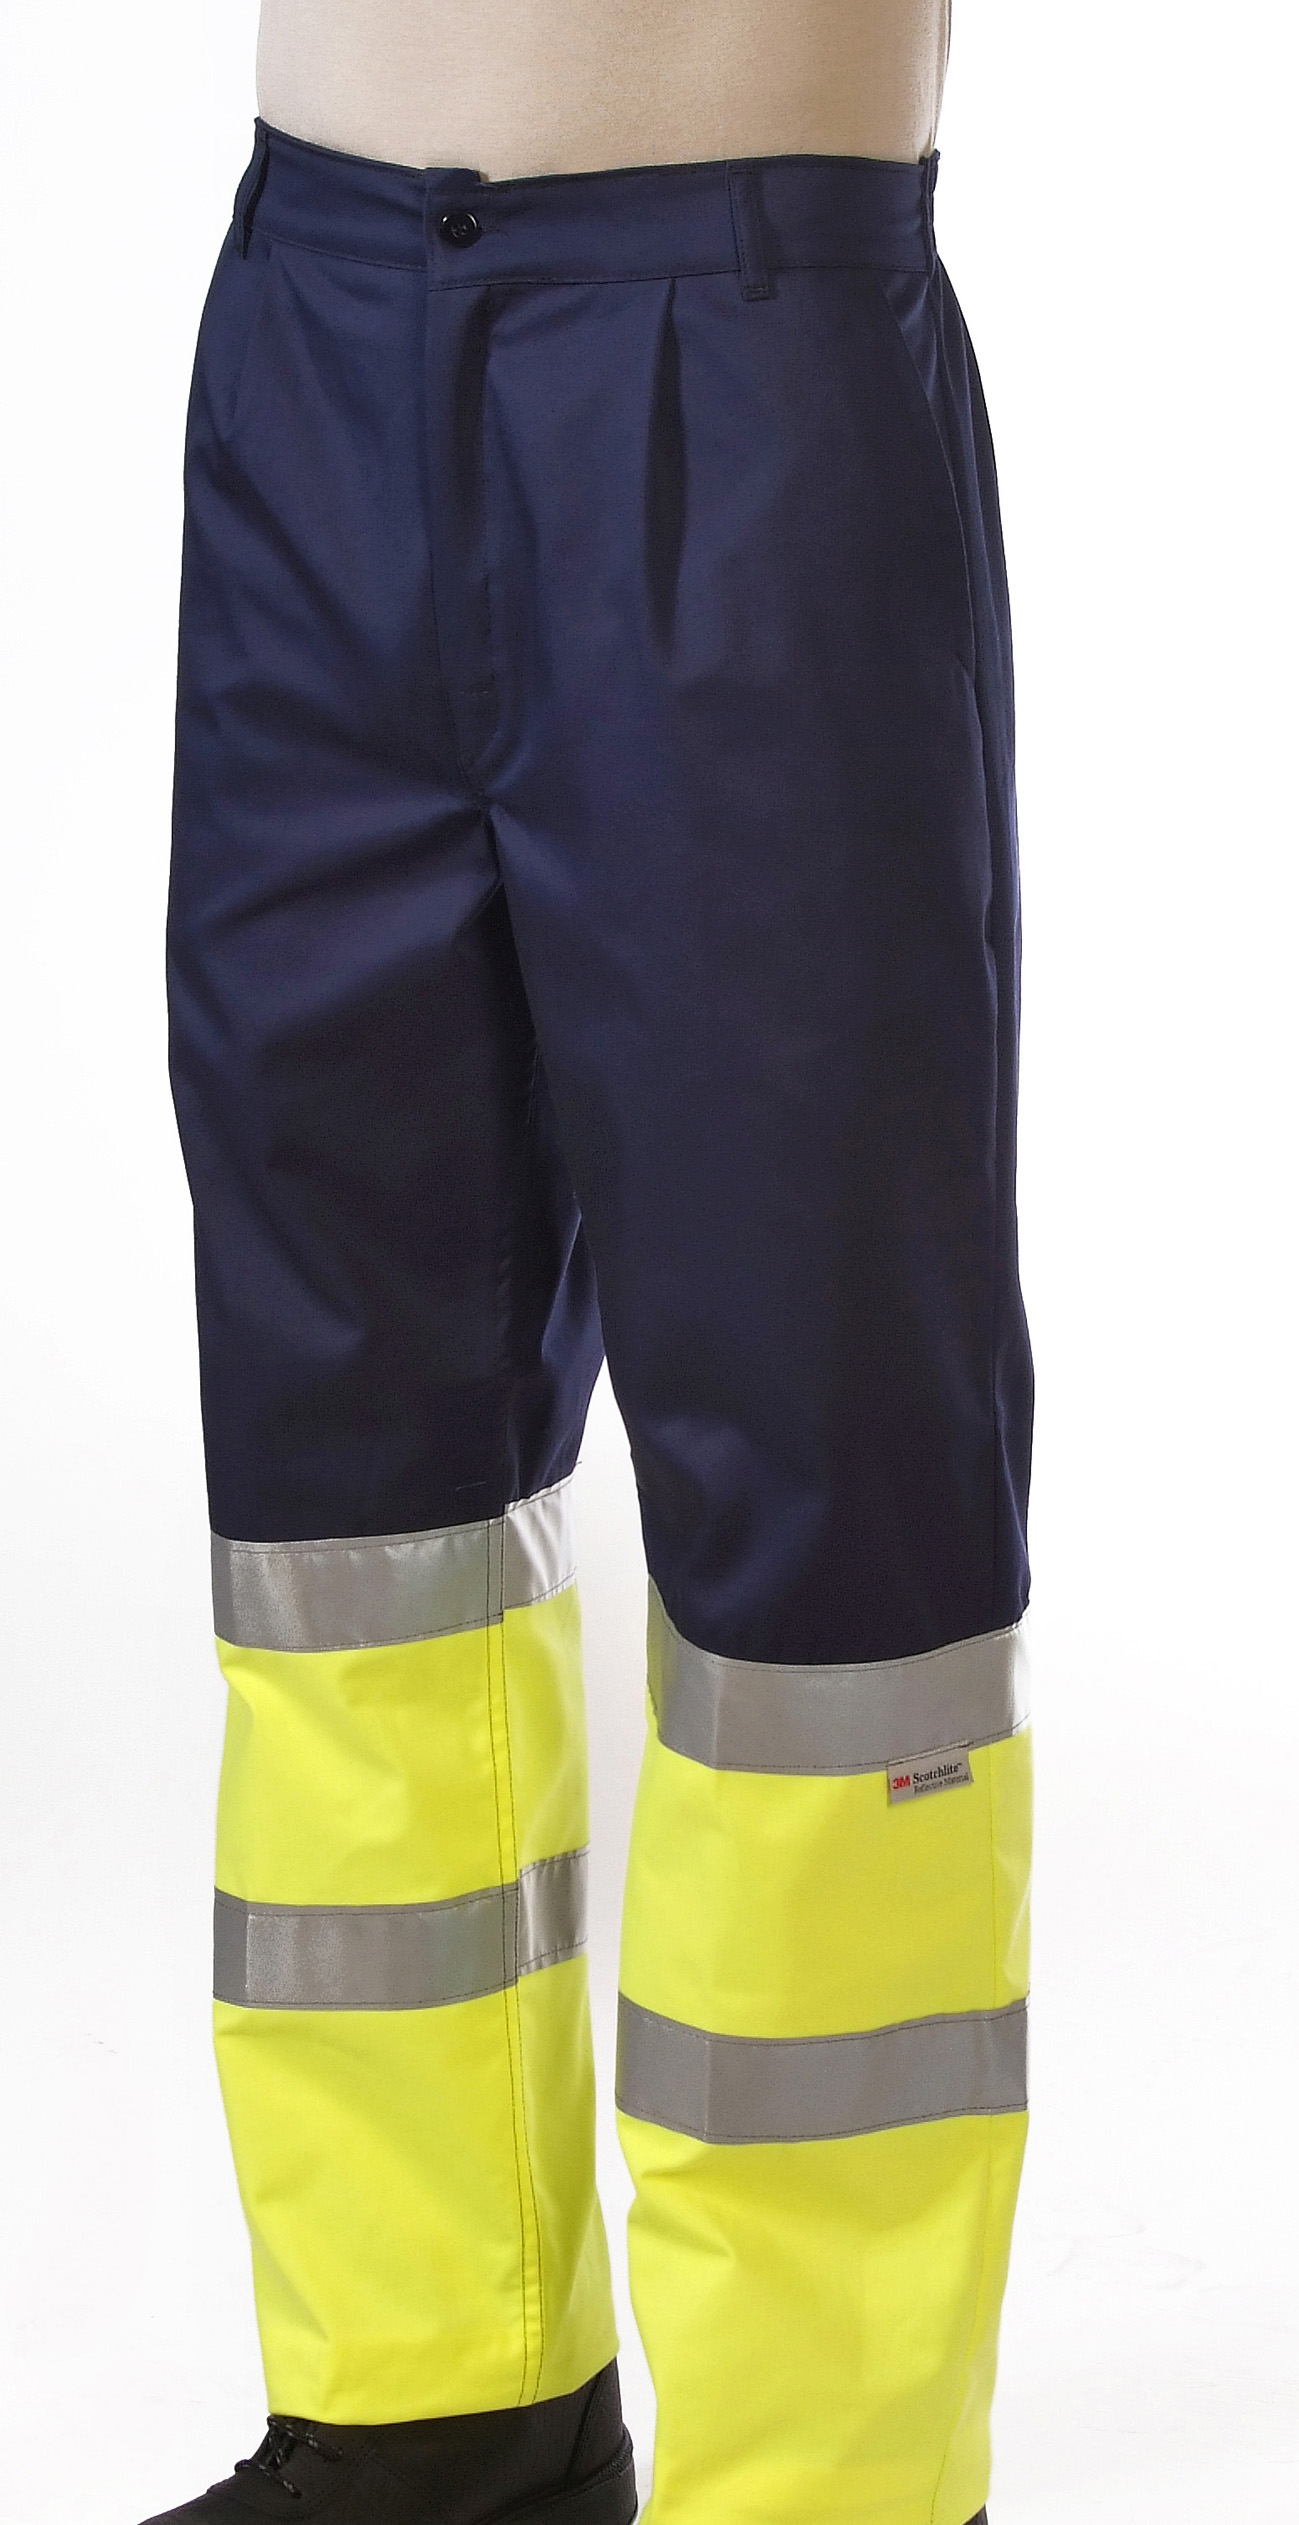 Pantalón combinado amarillo flúor alta visibilidad Image